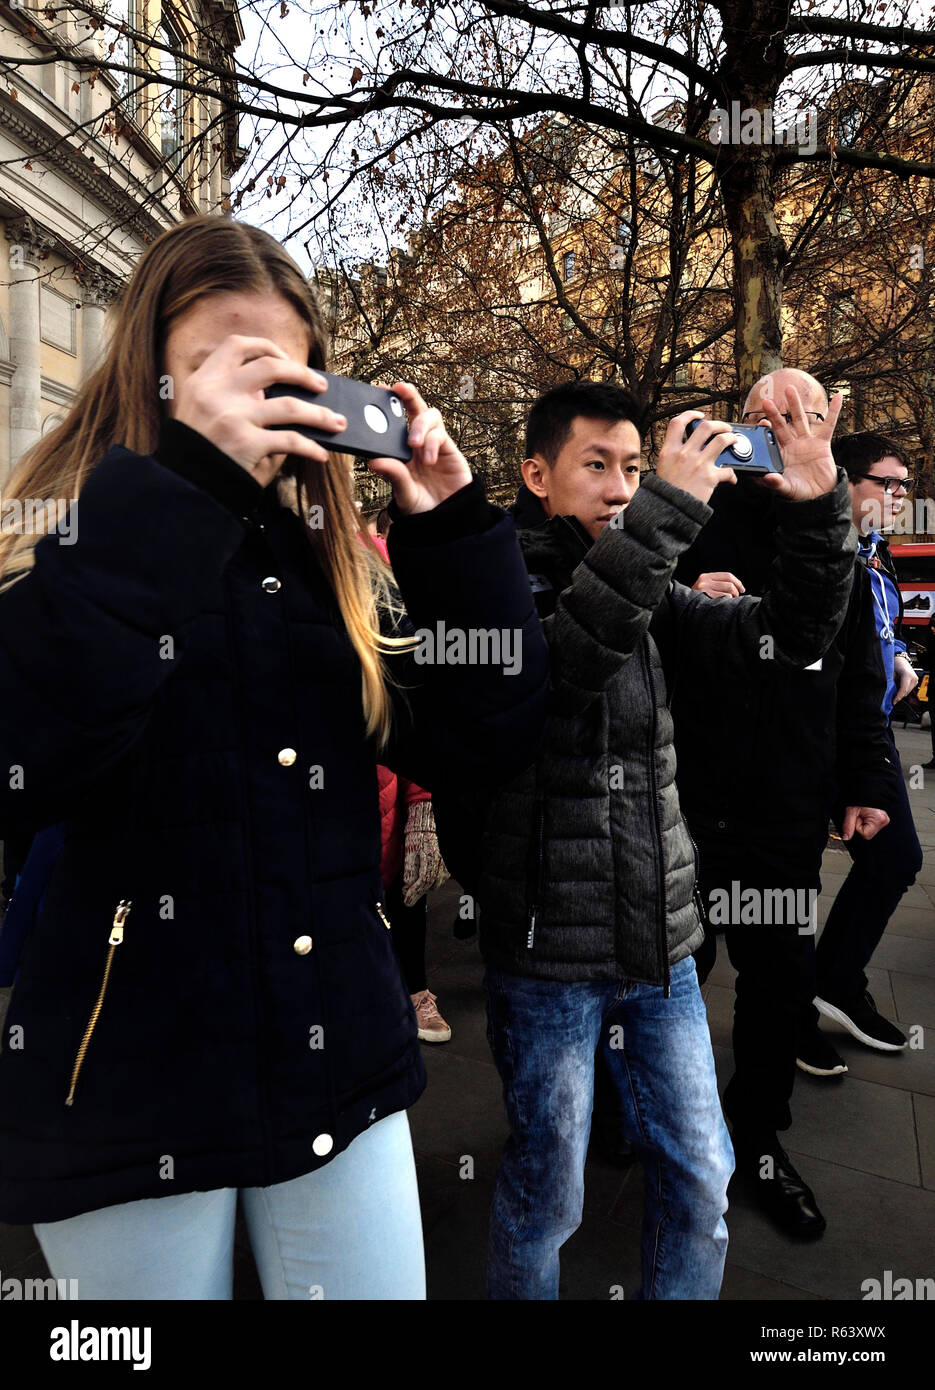 Los jóvenes turistas de filmación en su teléfono móvil whie caminar, Trafalgar Square, Londres, Inglaterra, Reino Unido. Foto de stock